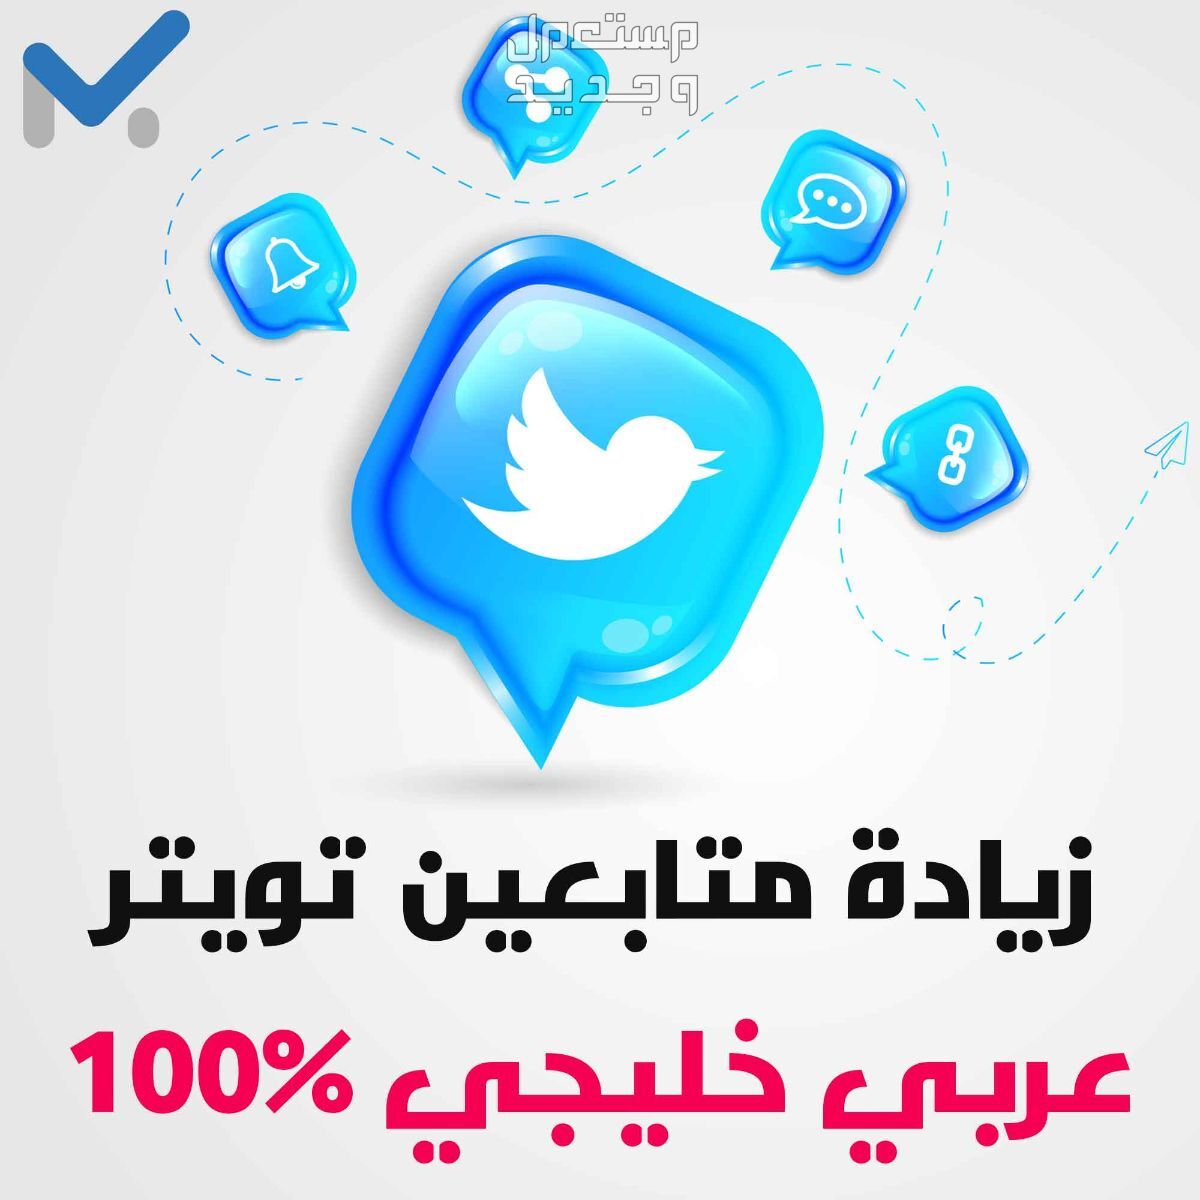 زيادة متابعين تويتر عرب خليجي حقيقيين 100%